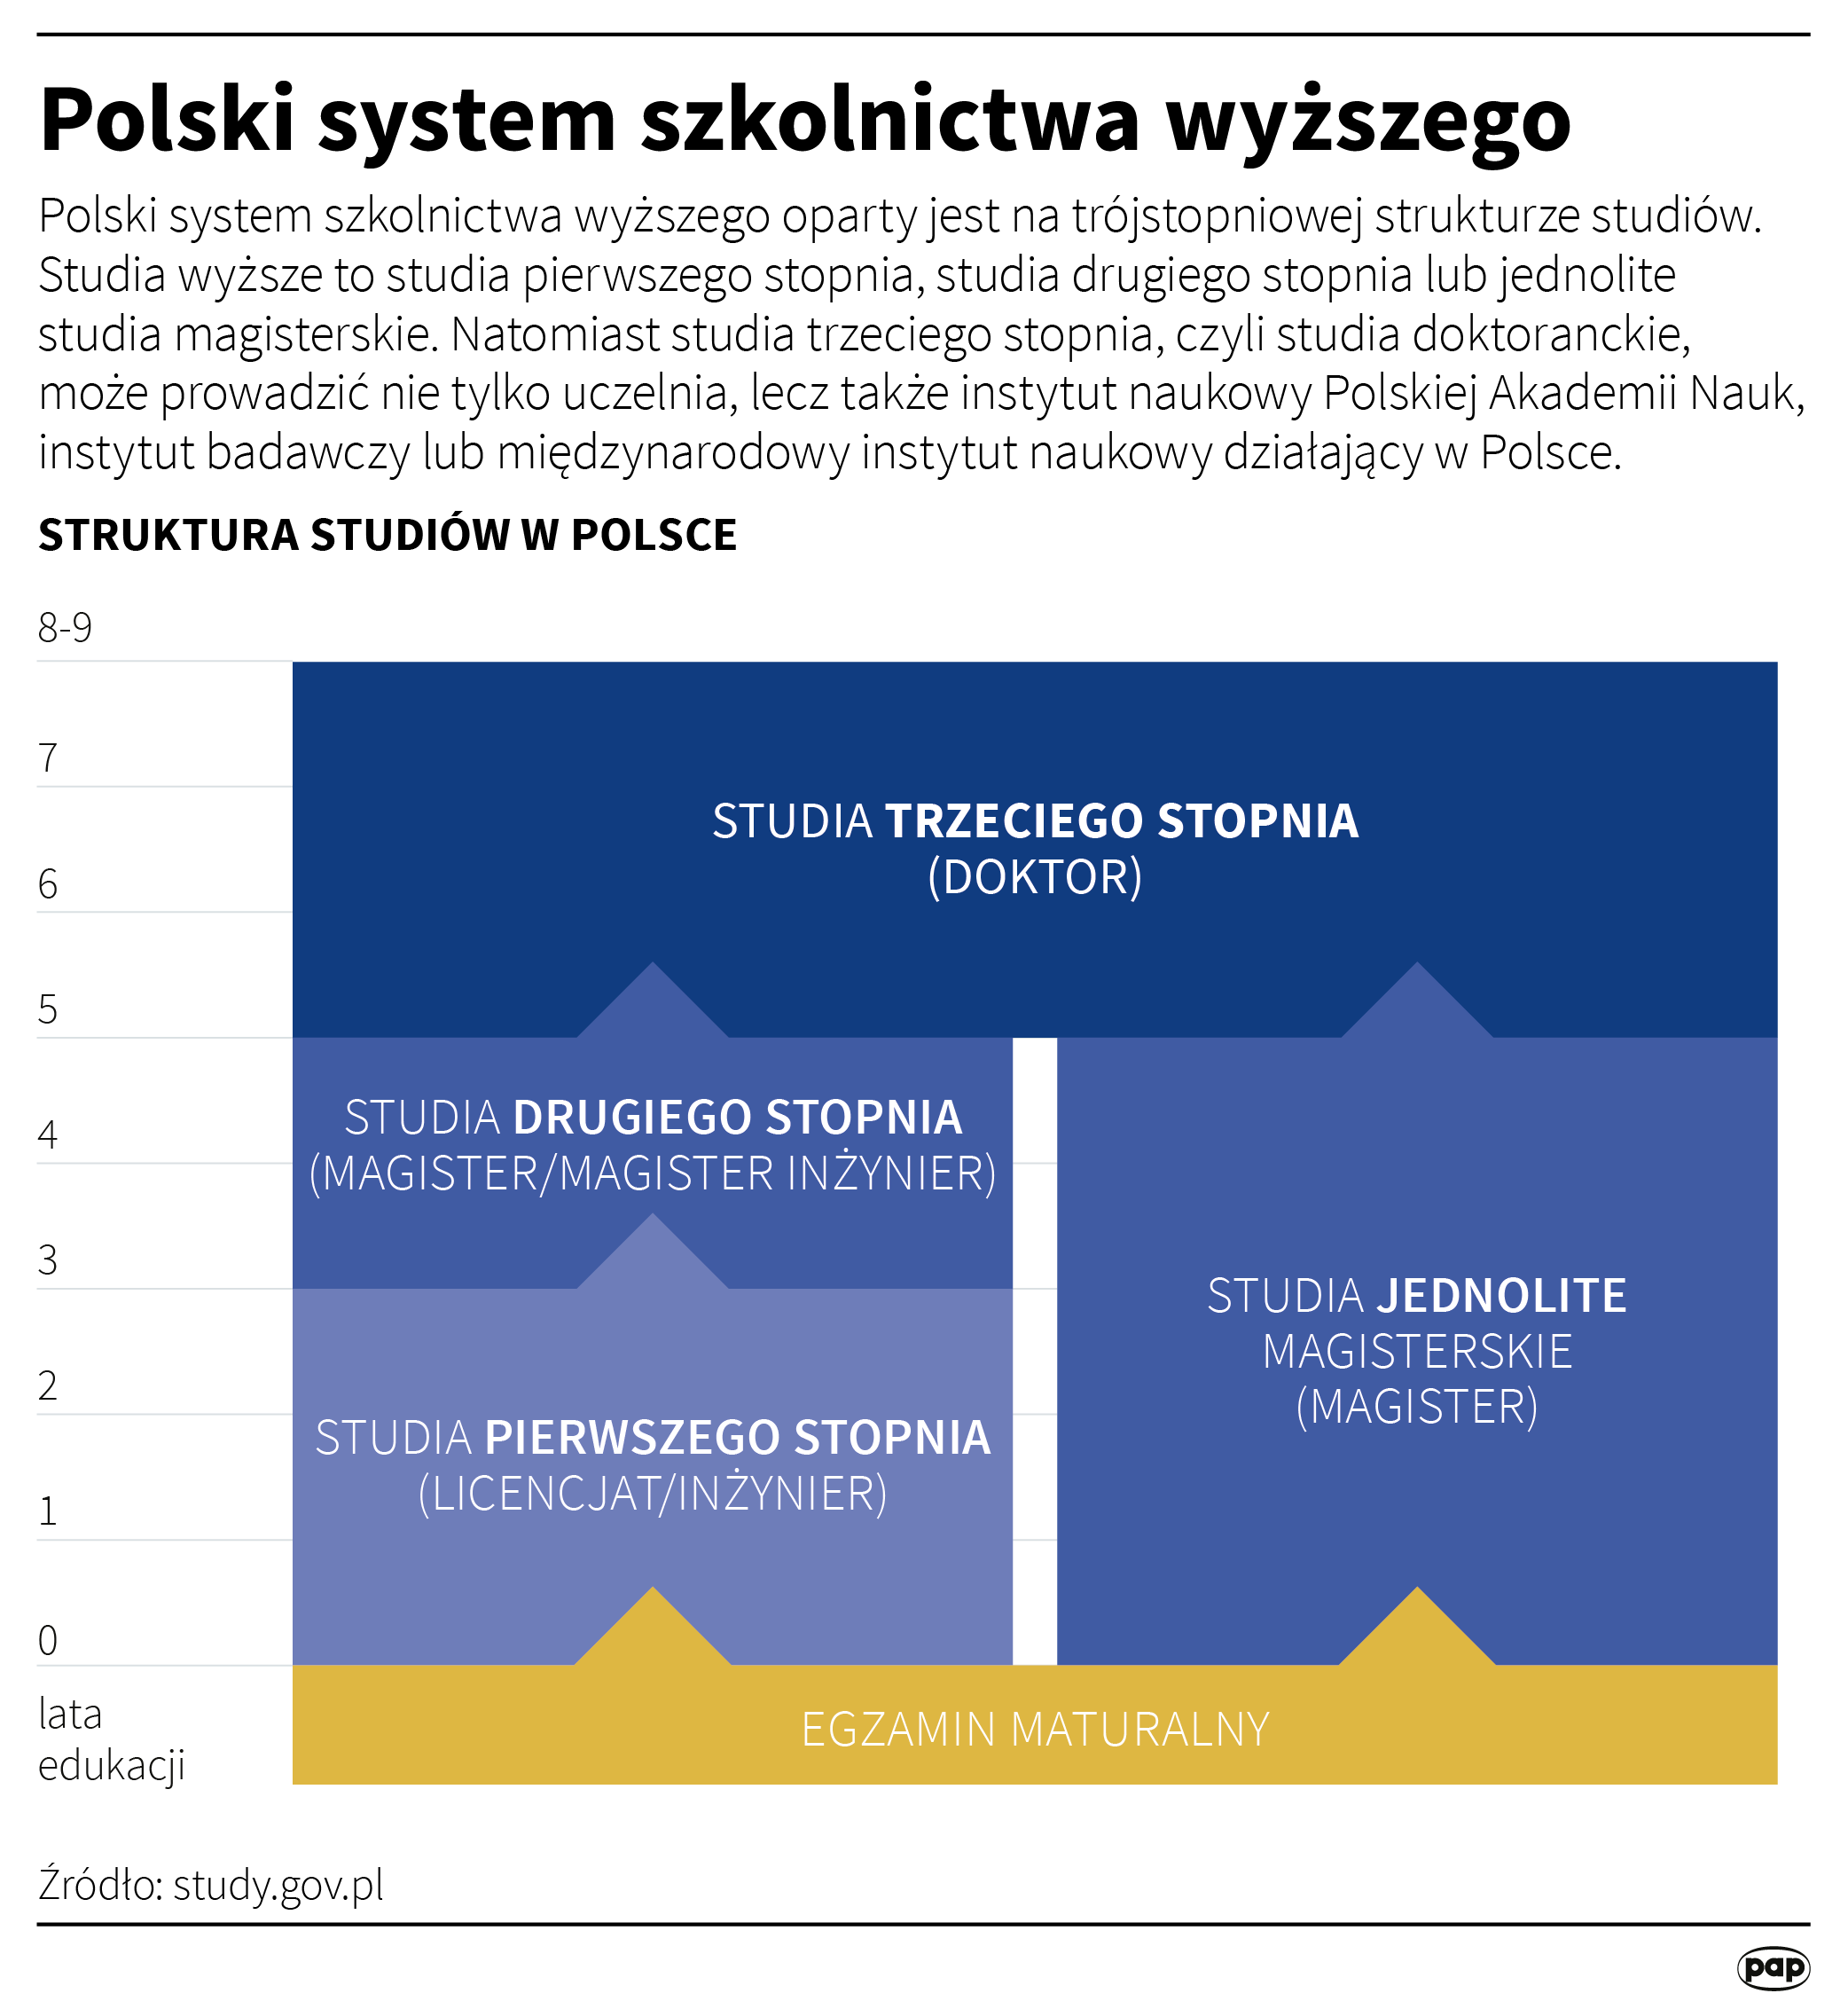 Polski system szkolnictwa wyższego, infografika PAP